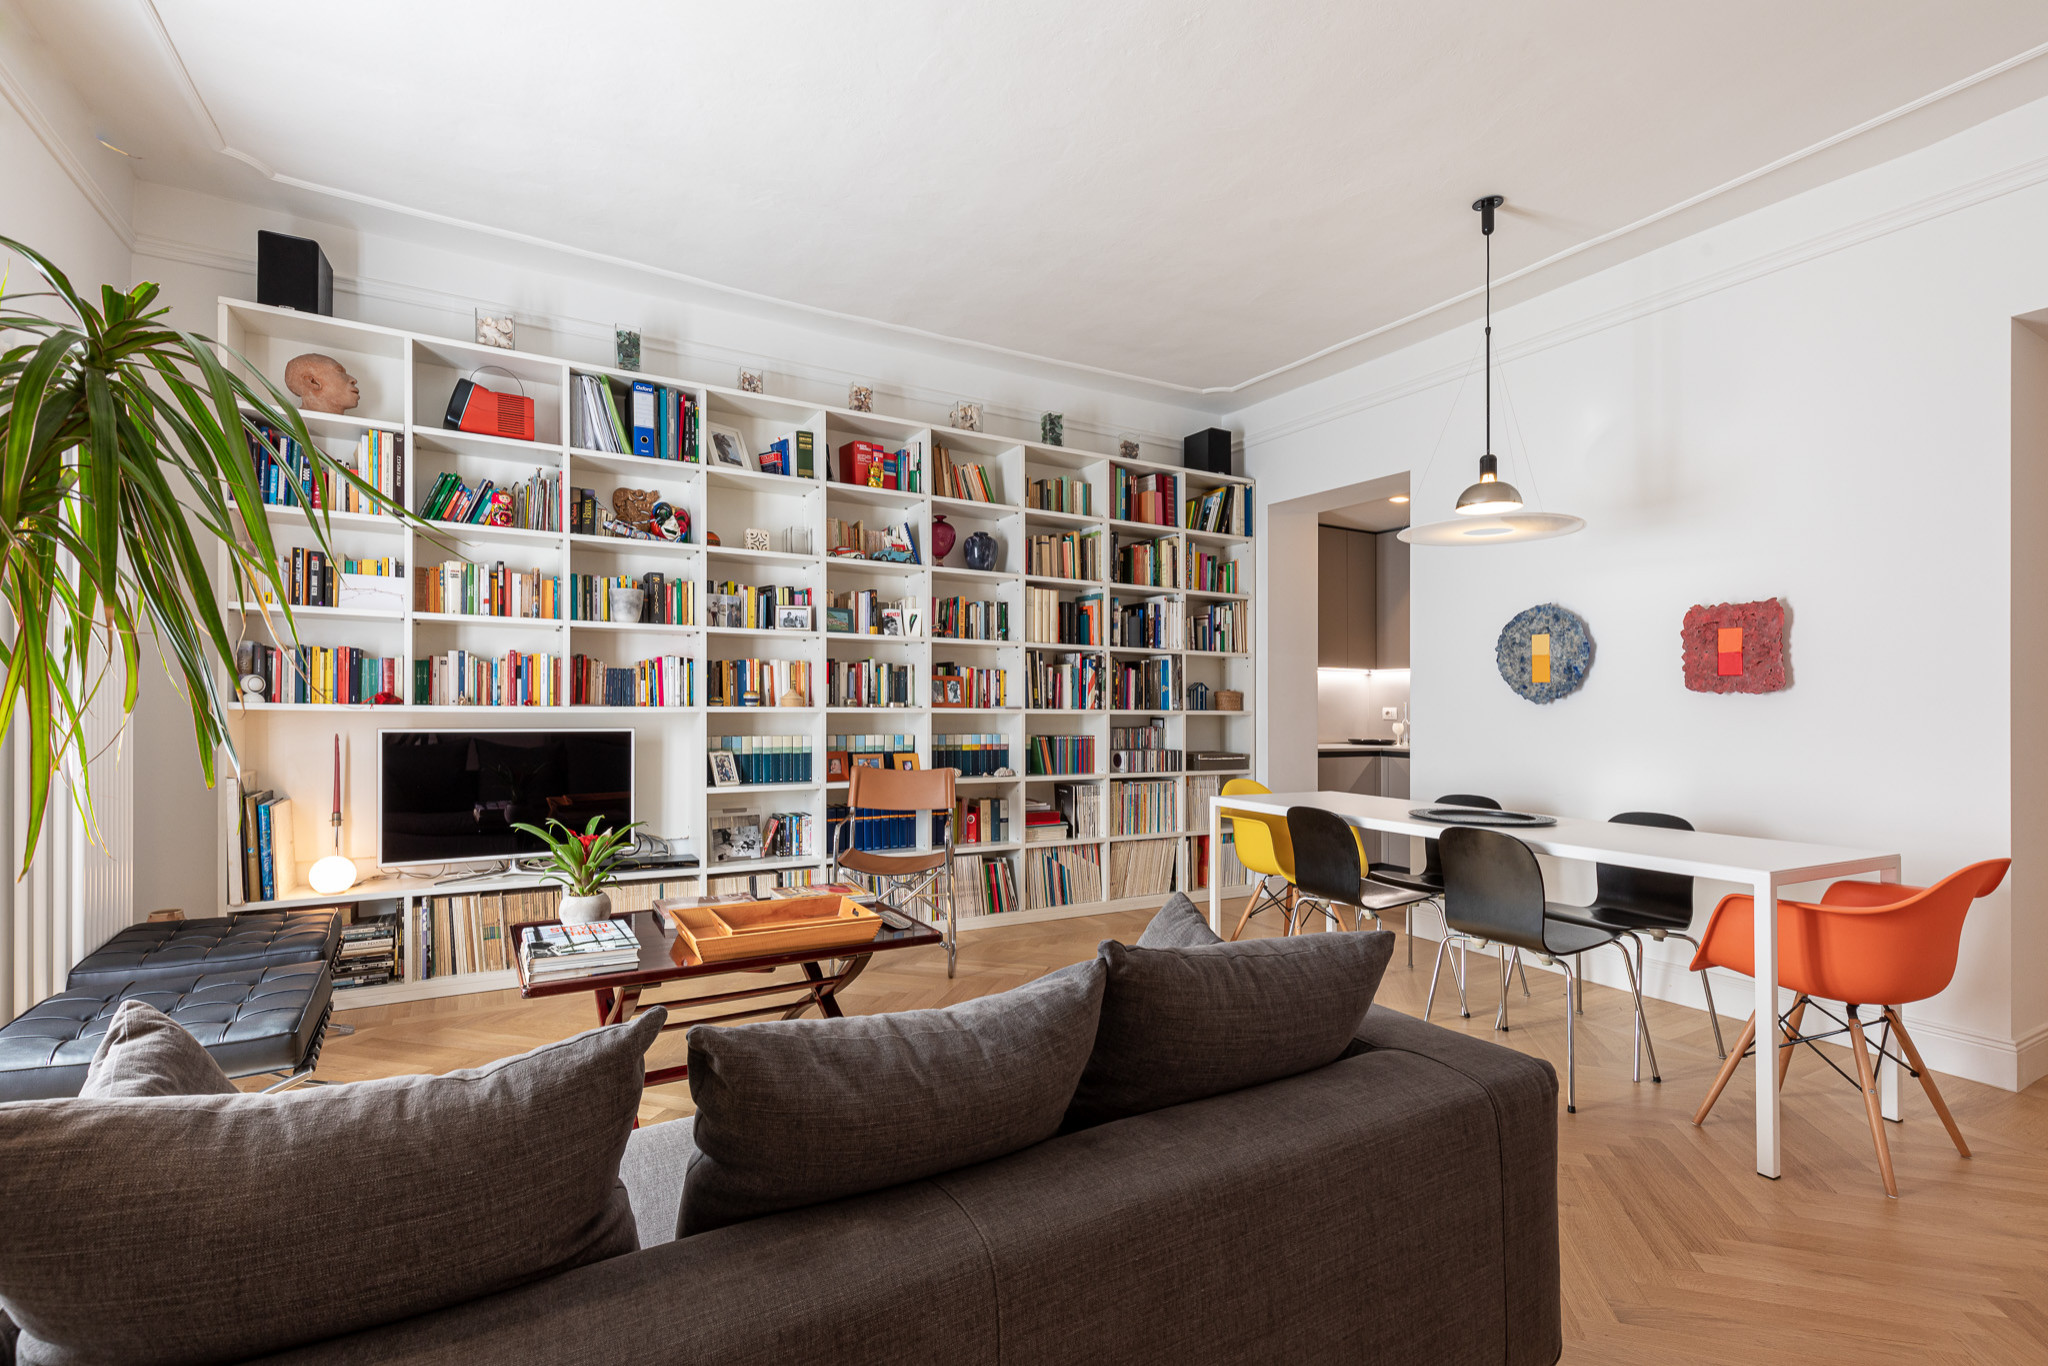 Grande soggiorno con libreria - Foto e Idee per Arredare